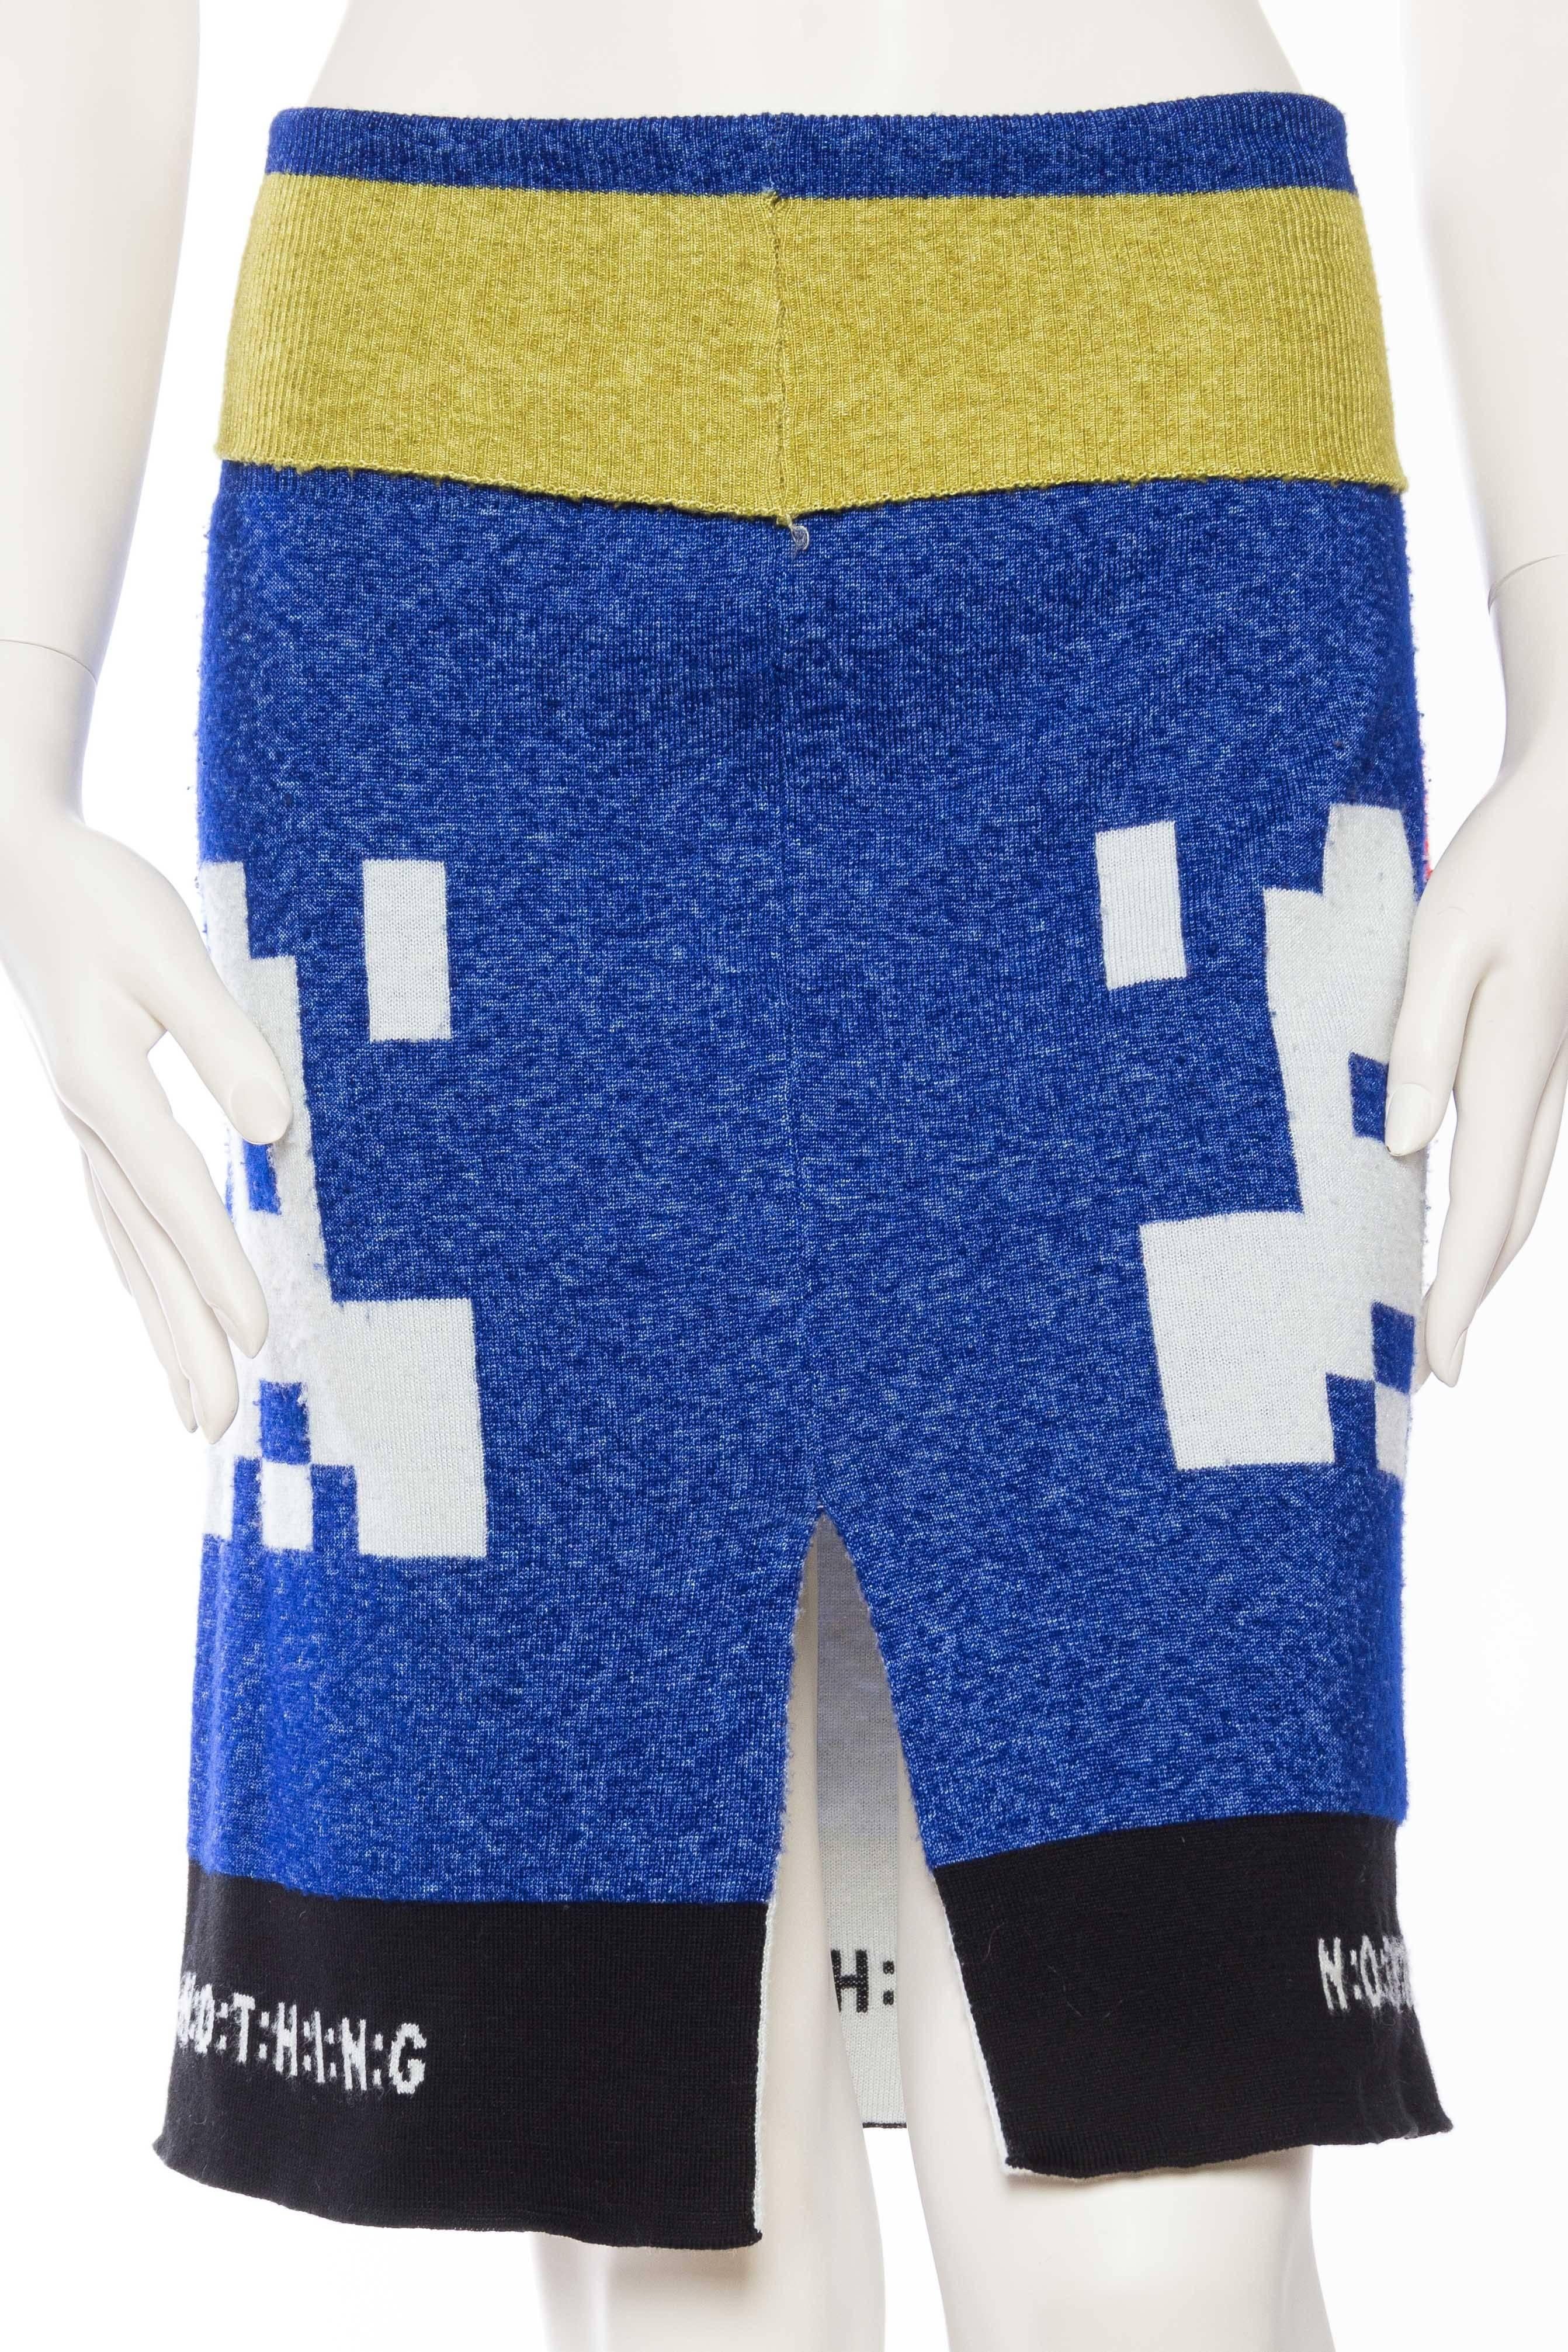 Bernhard Willhelm "Sexy Pocket" Knit Skirt